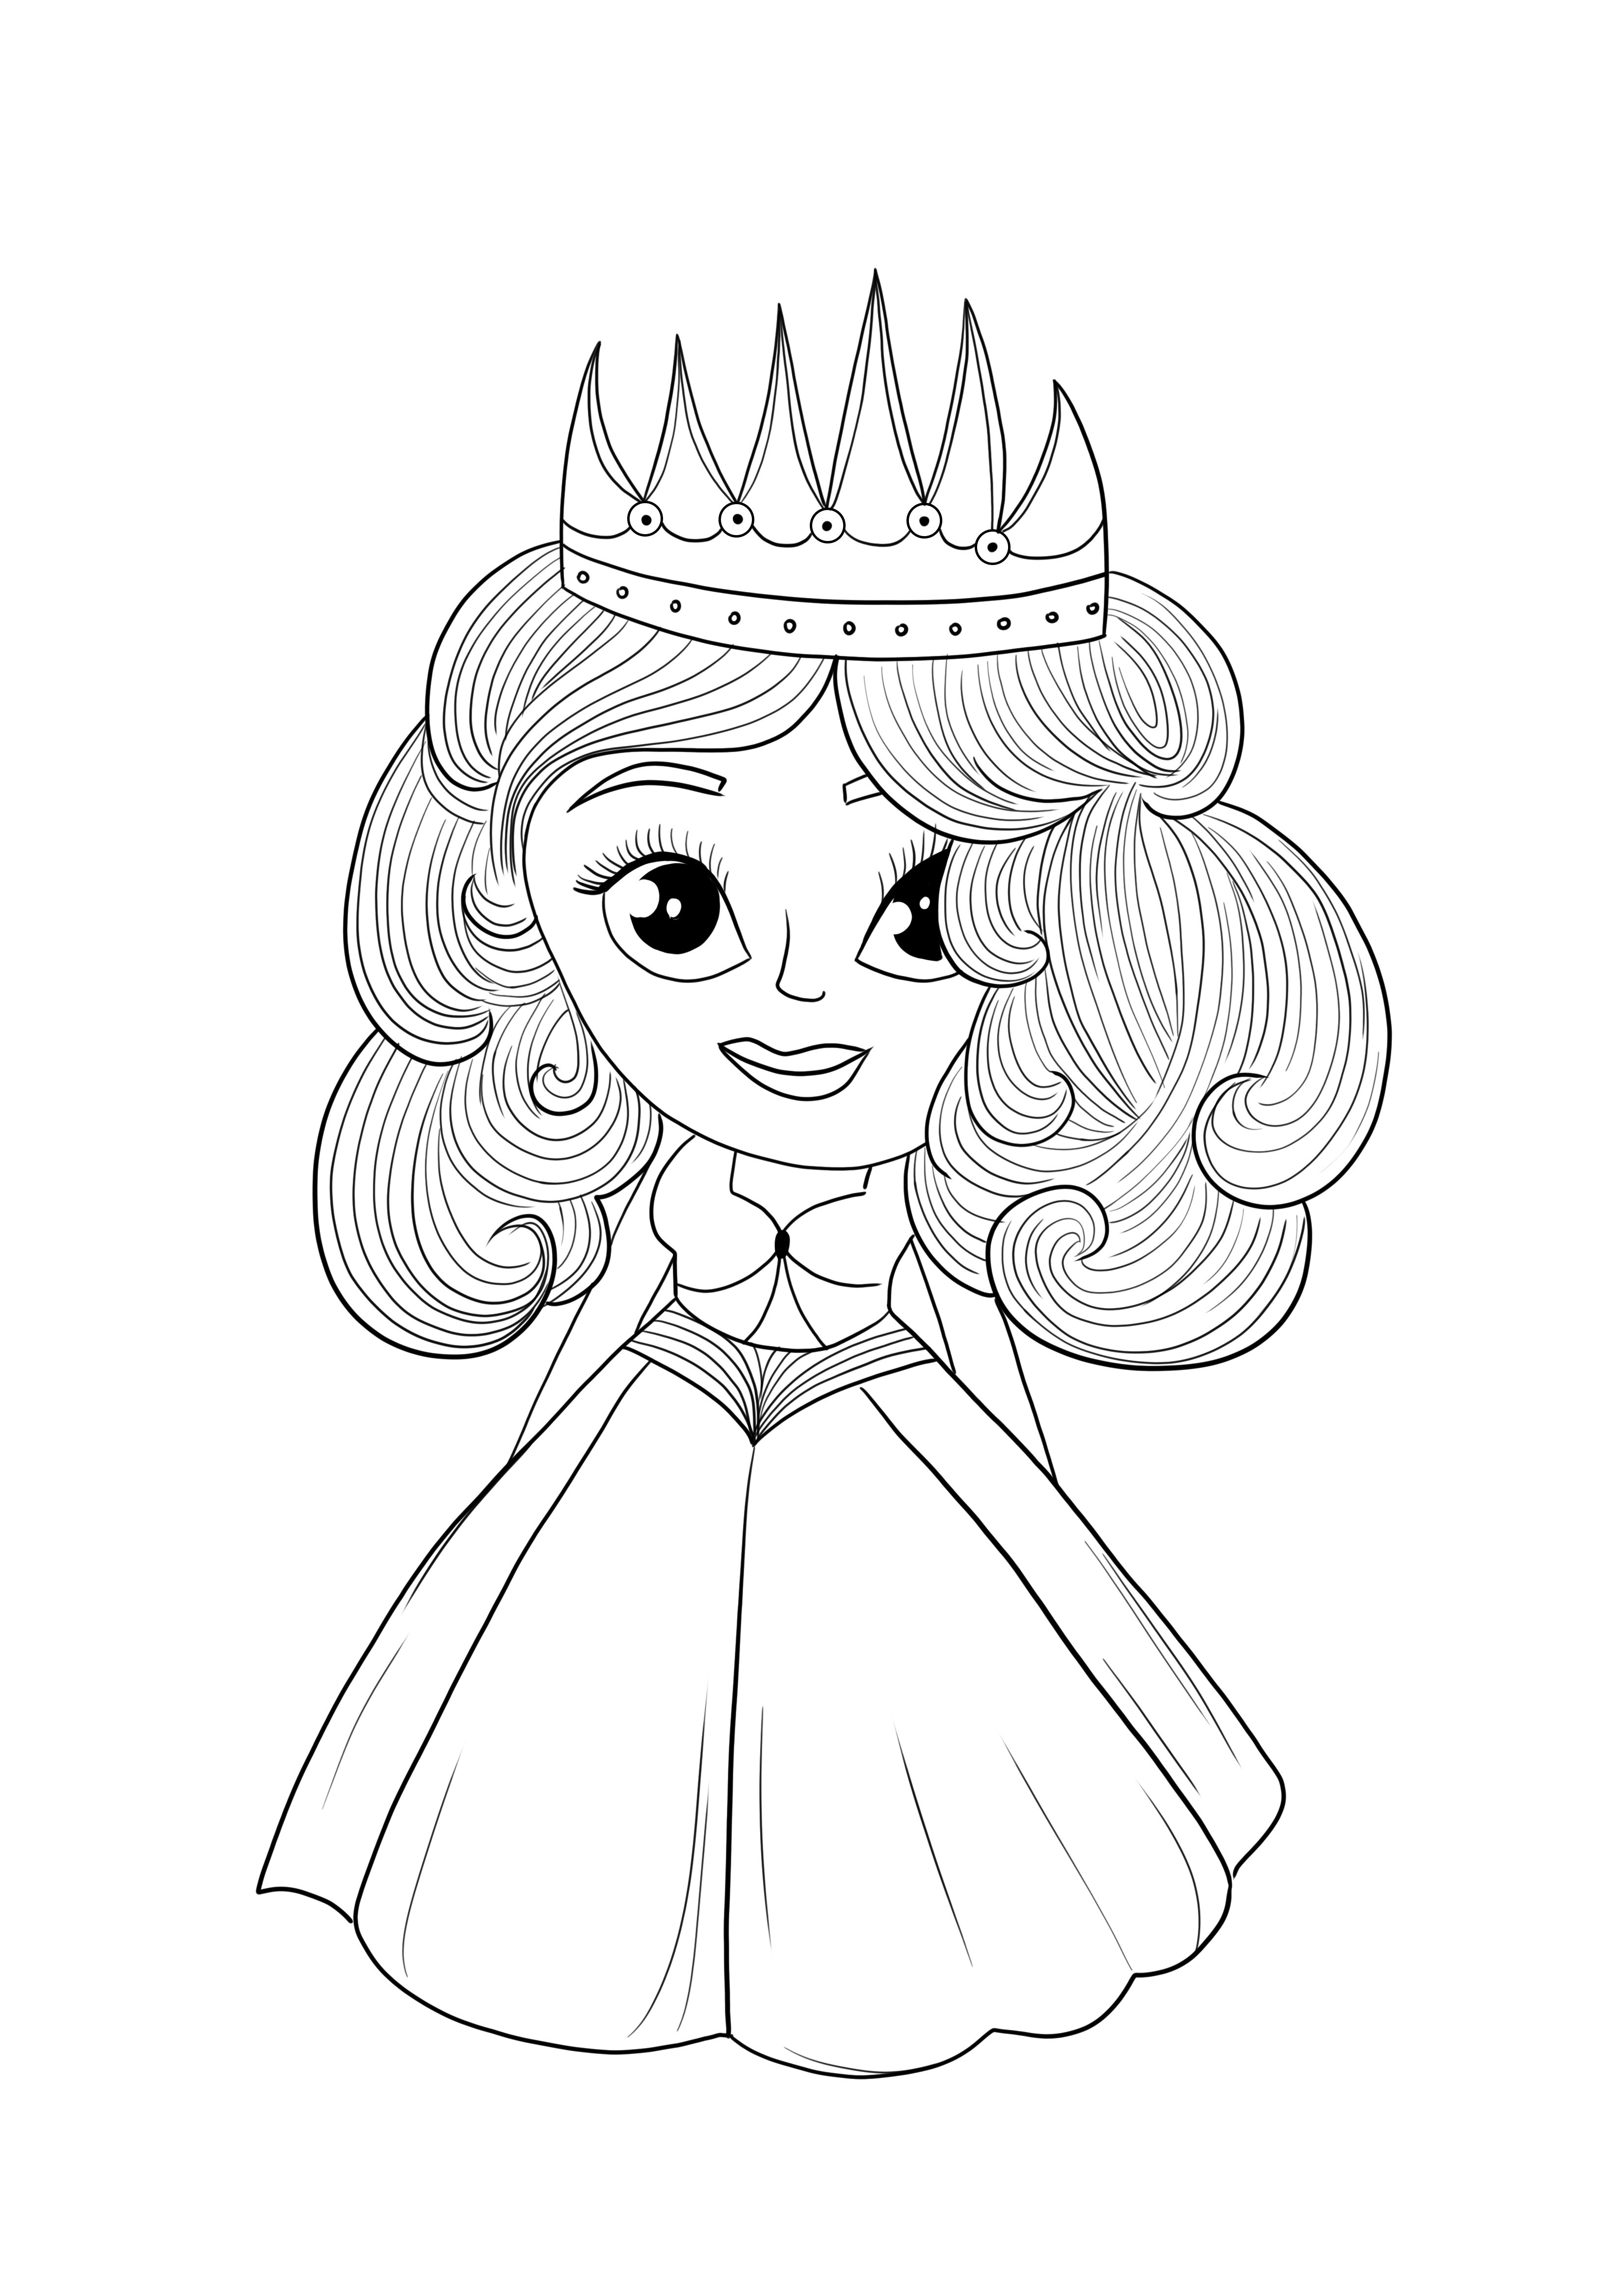 Belle princesse - coloriage et téléchargement gratuits d'images